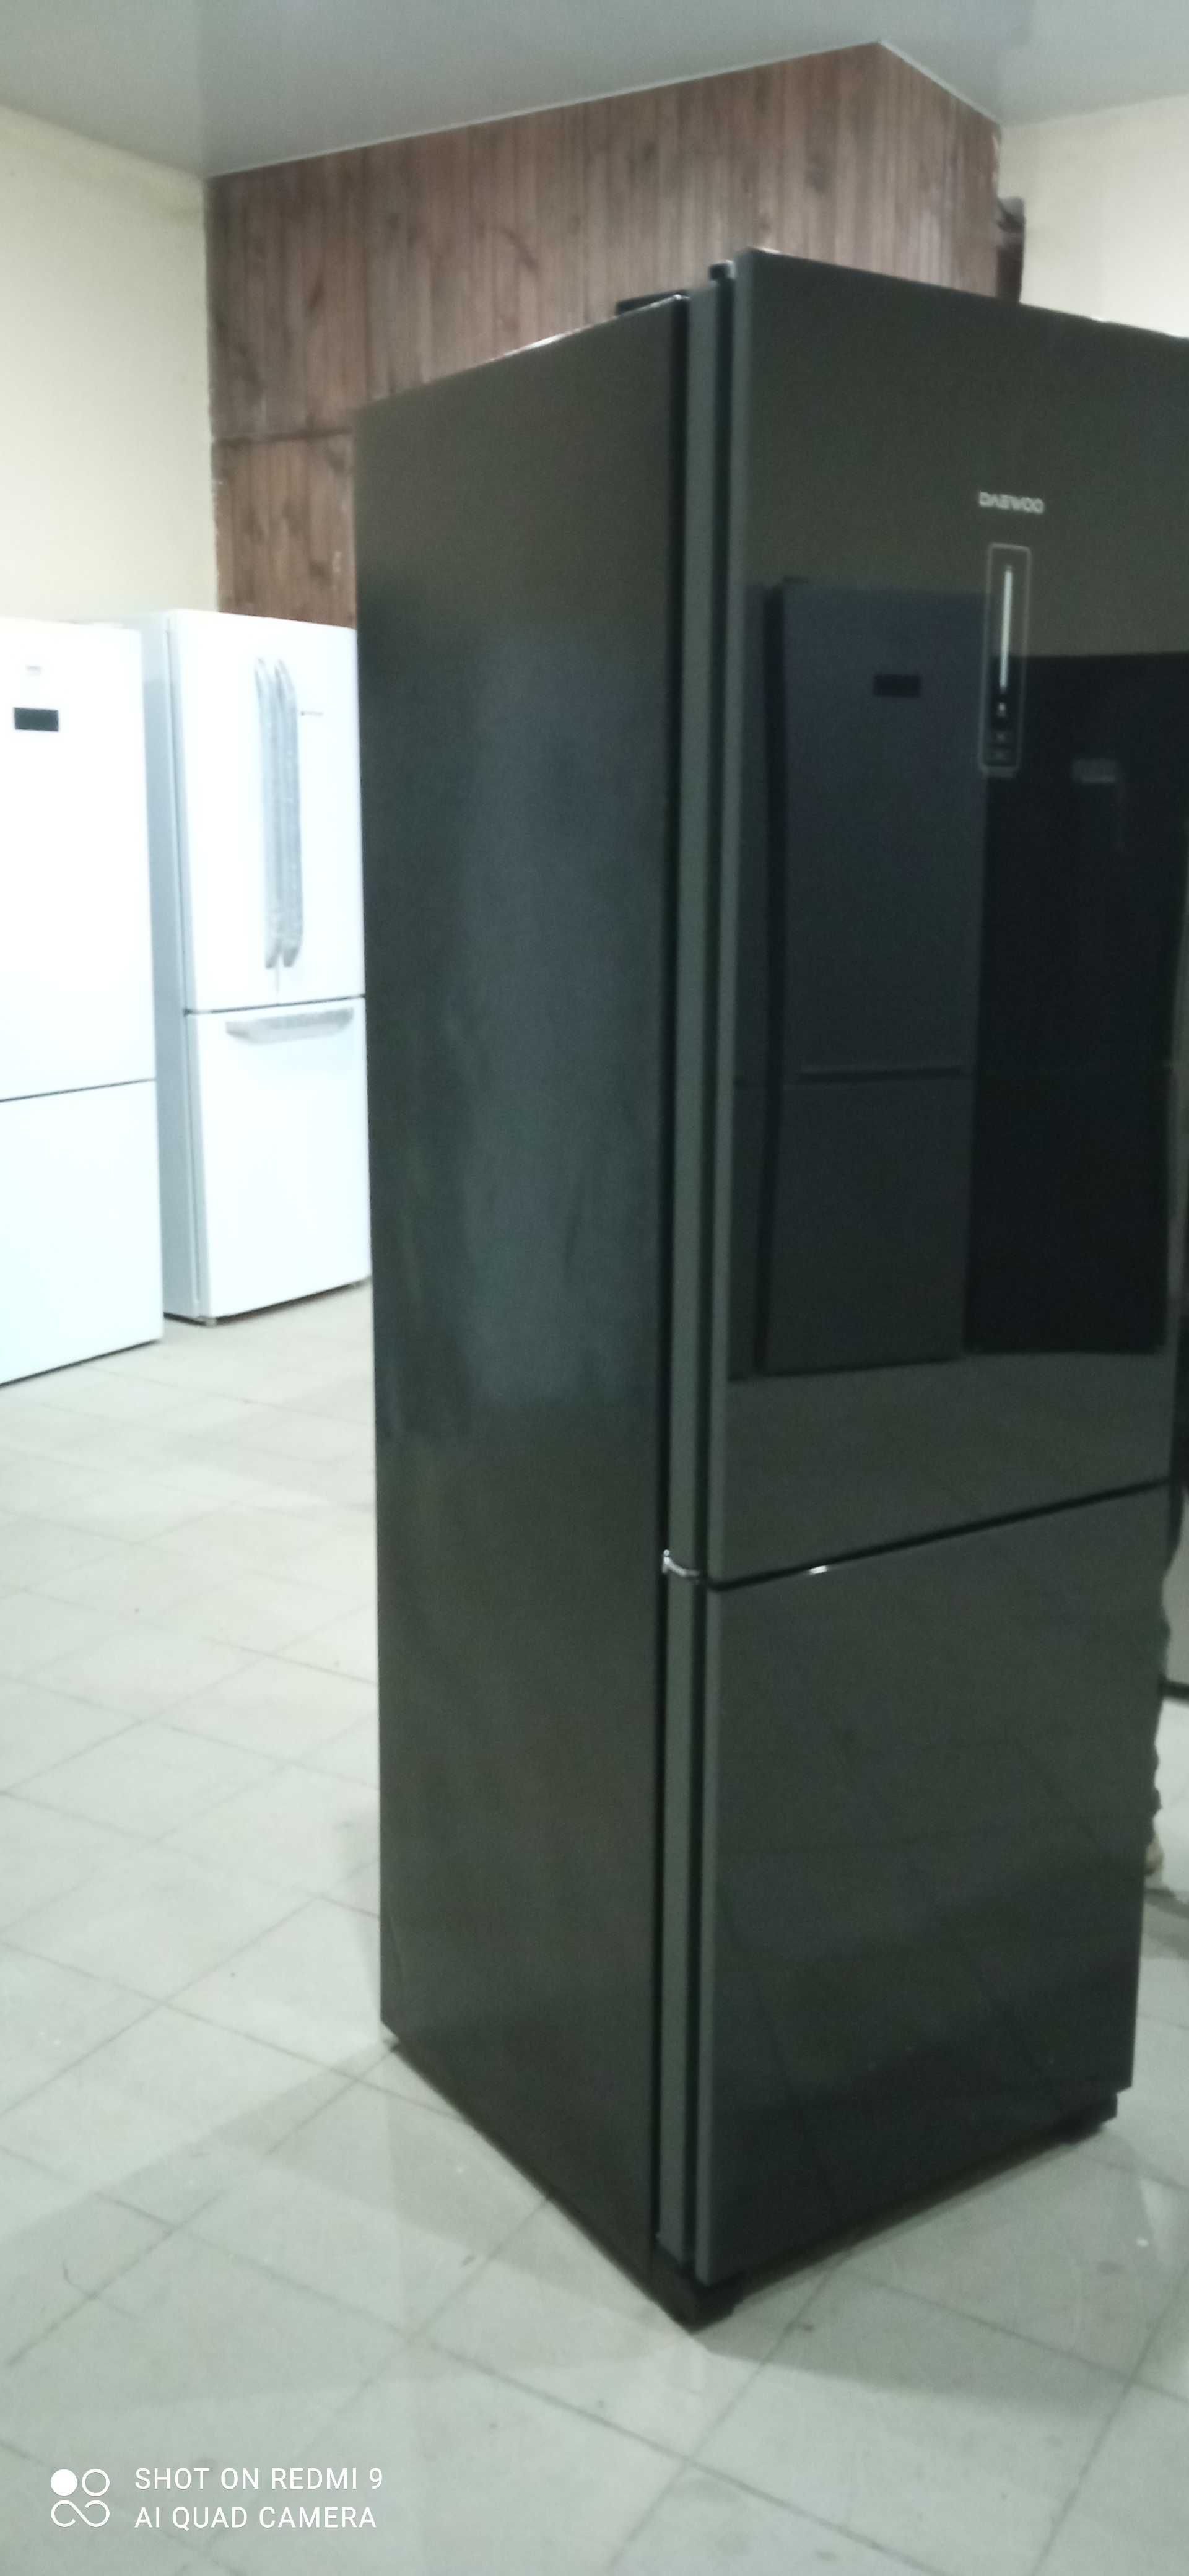 Б/У холодильник з скляними дверима DAEWOO RN-t405pnb